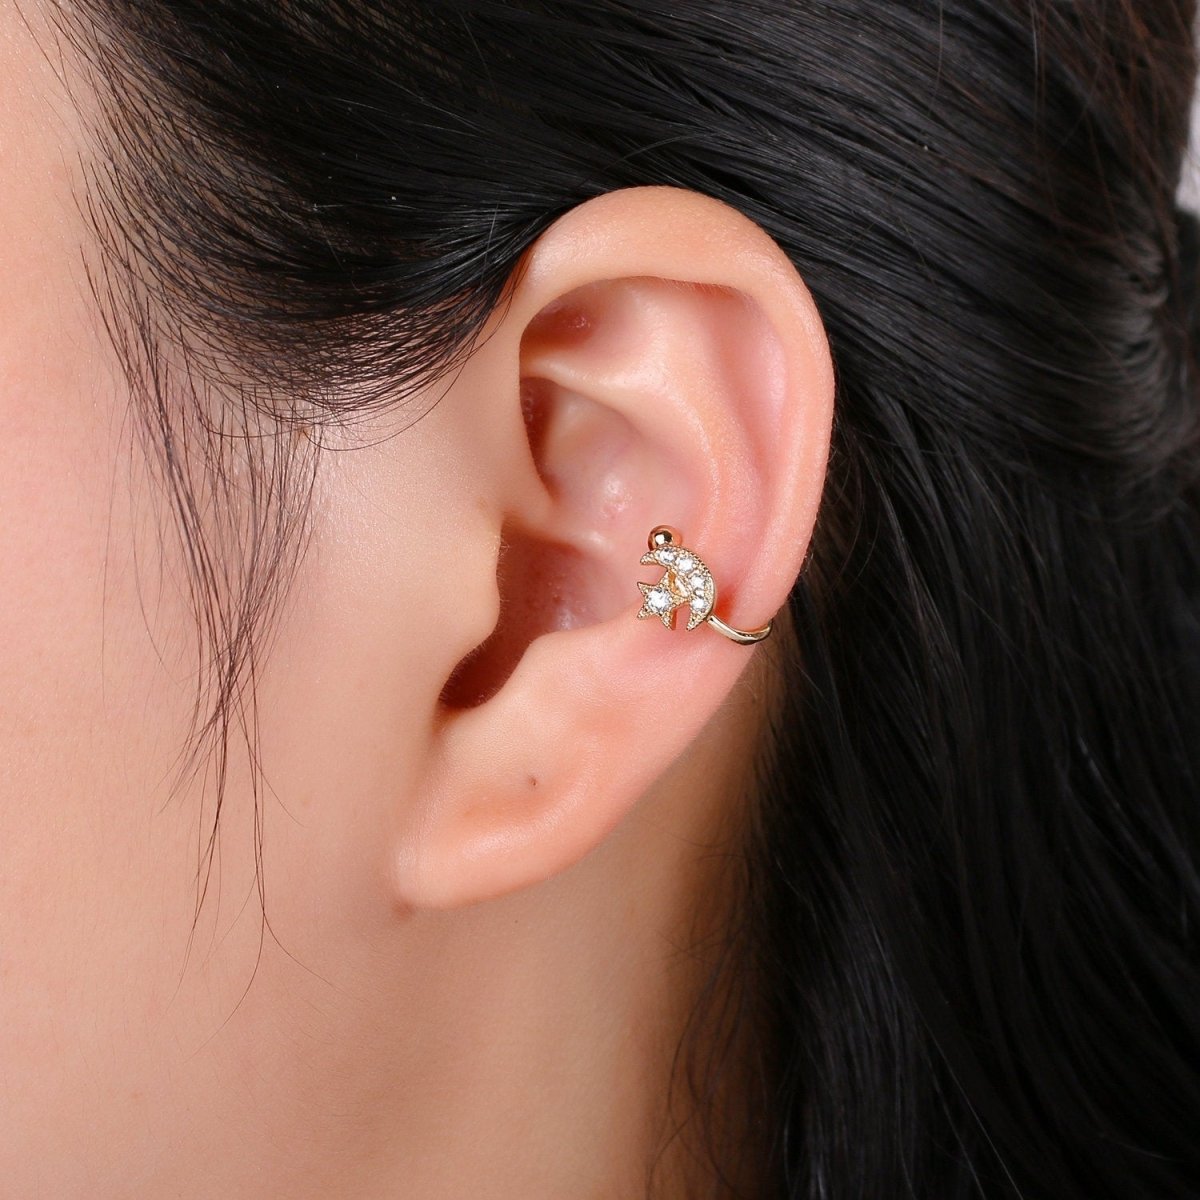 Dainty Moon Earcuff Gold Ear cuff cartilage earring no piercing, gold ear cuff, fake piercing, moon star earcuff, Celestial ear cuff wrap G-133 - DLUXCA